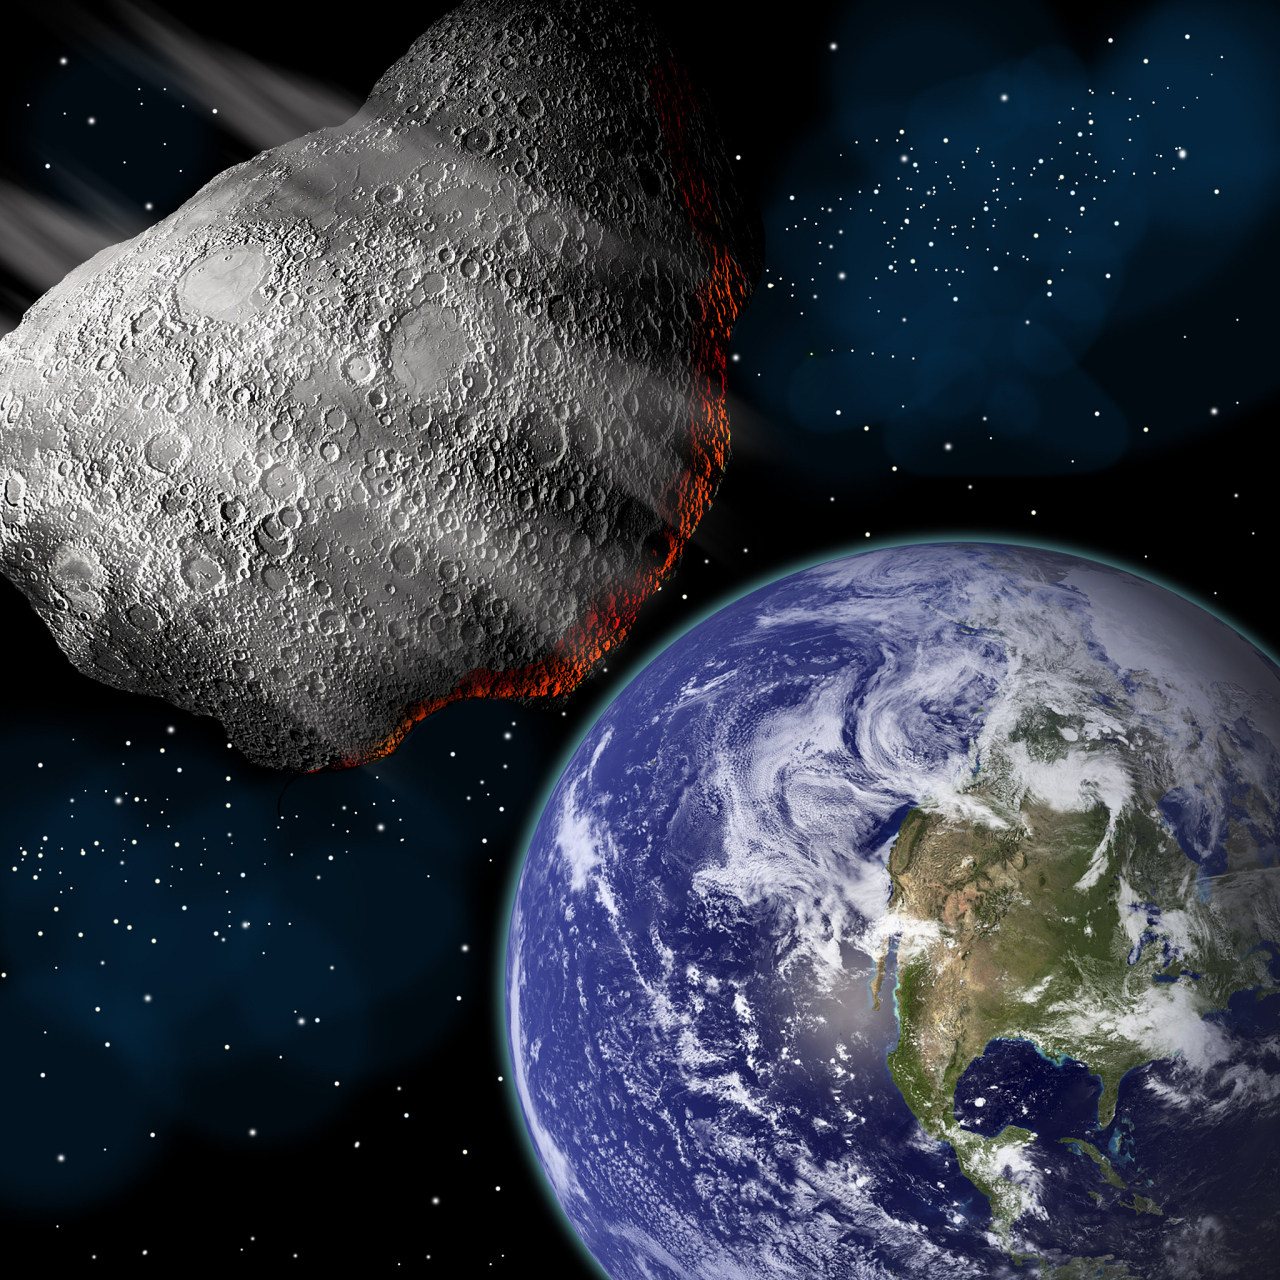 nasa宣布:发现超级地球,距离137光年,或是宜居星球!